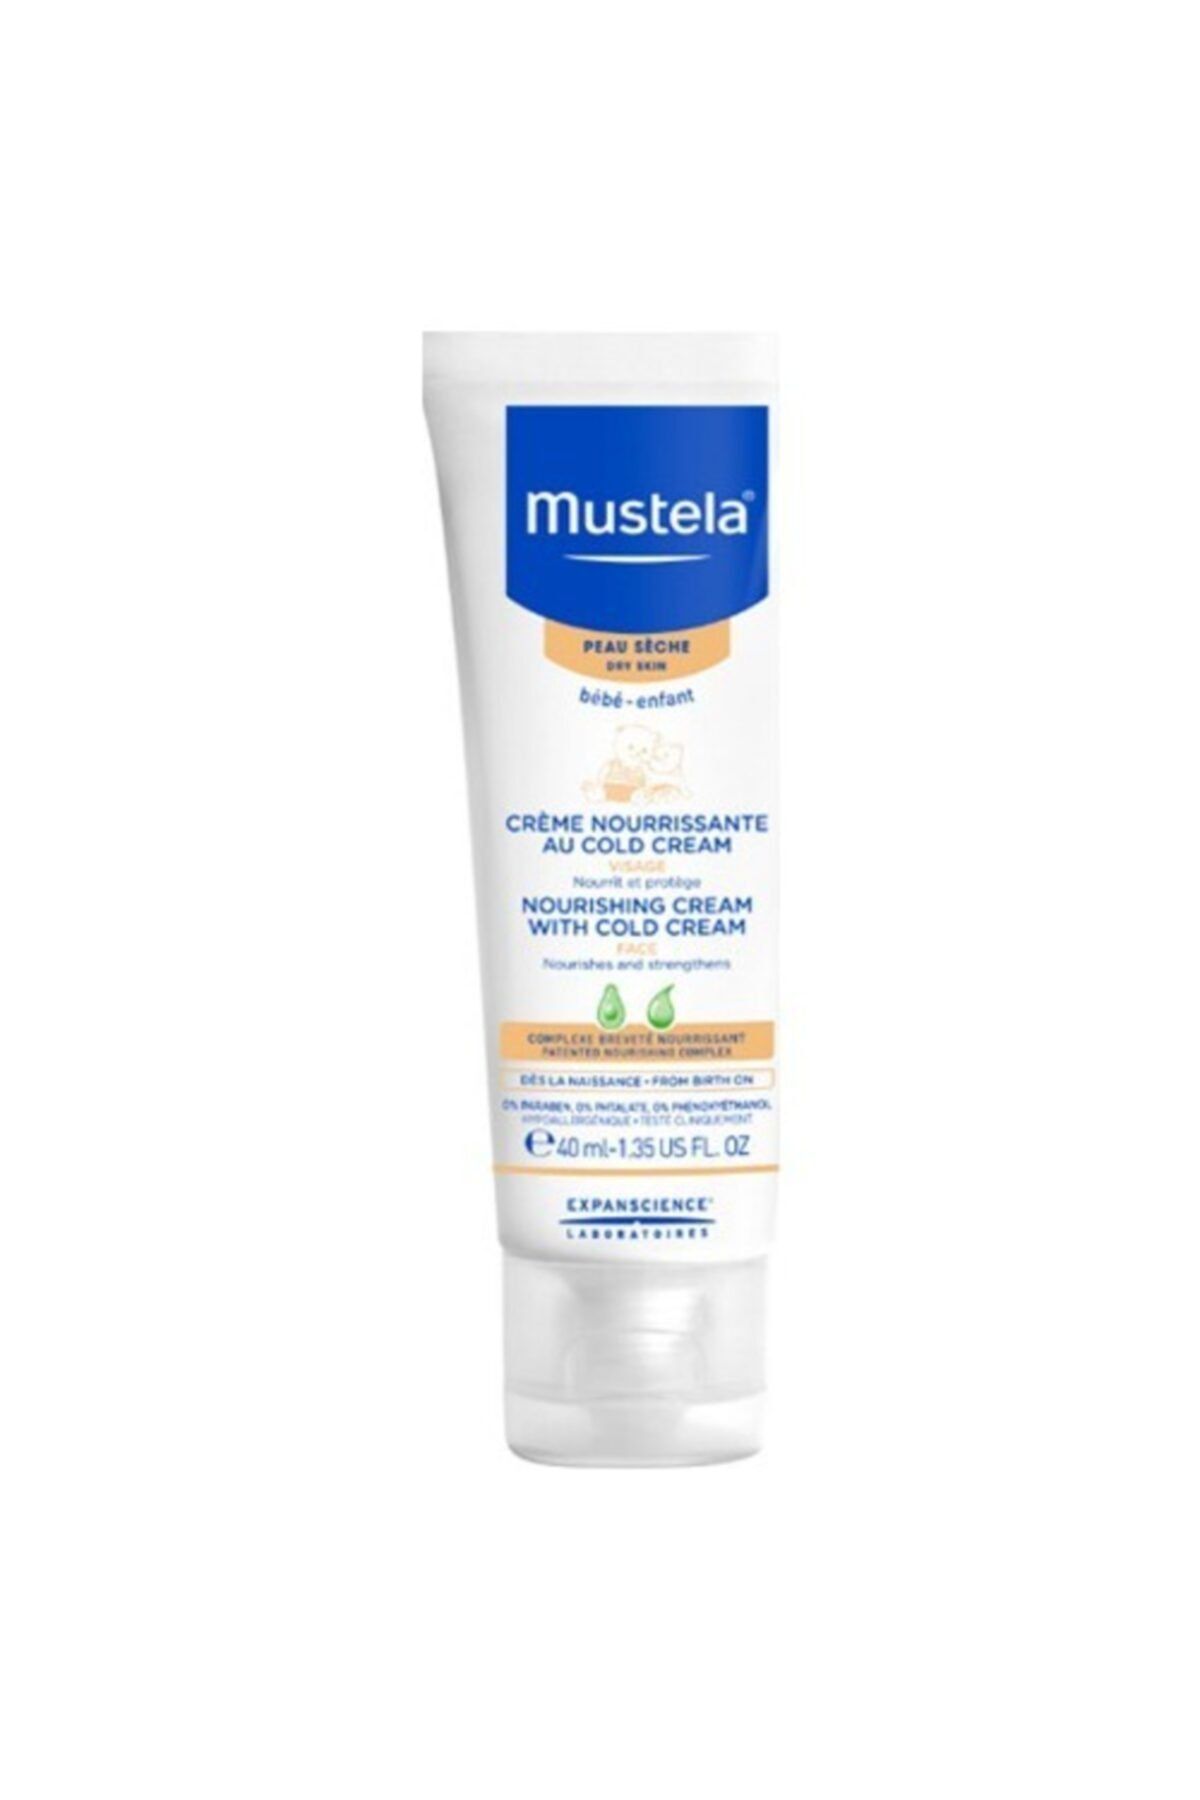 Mustela Cold Creme Face Cream